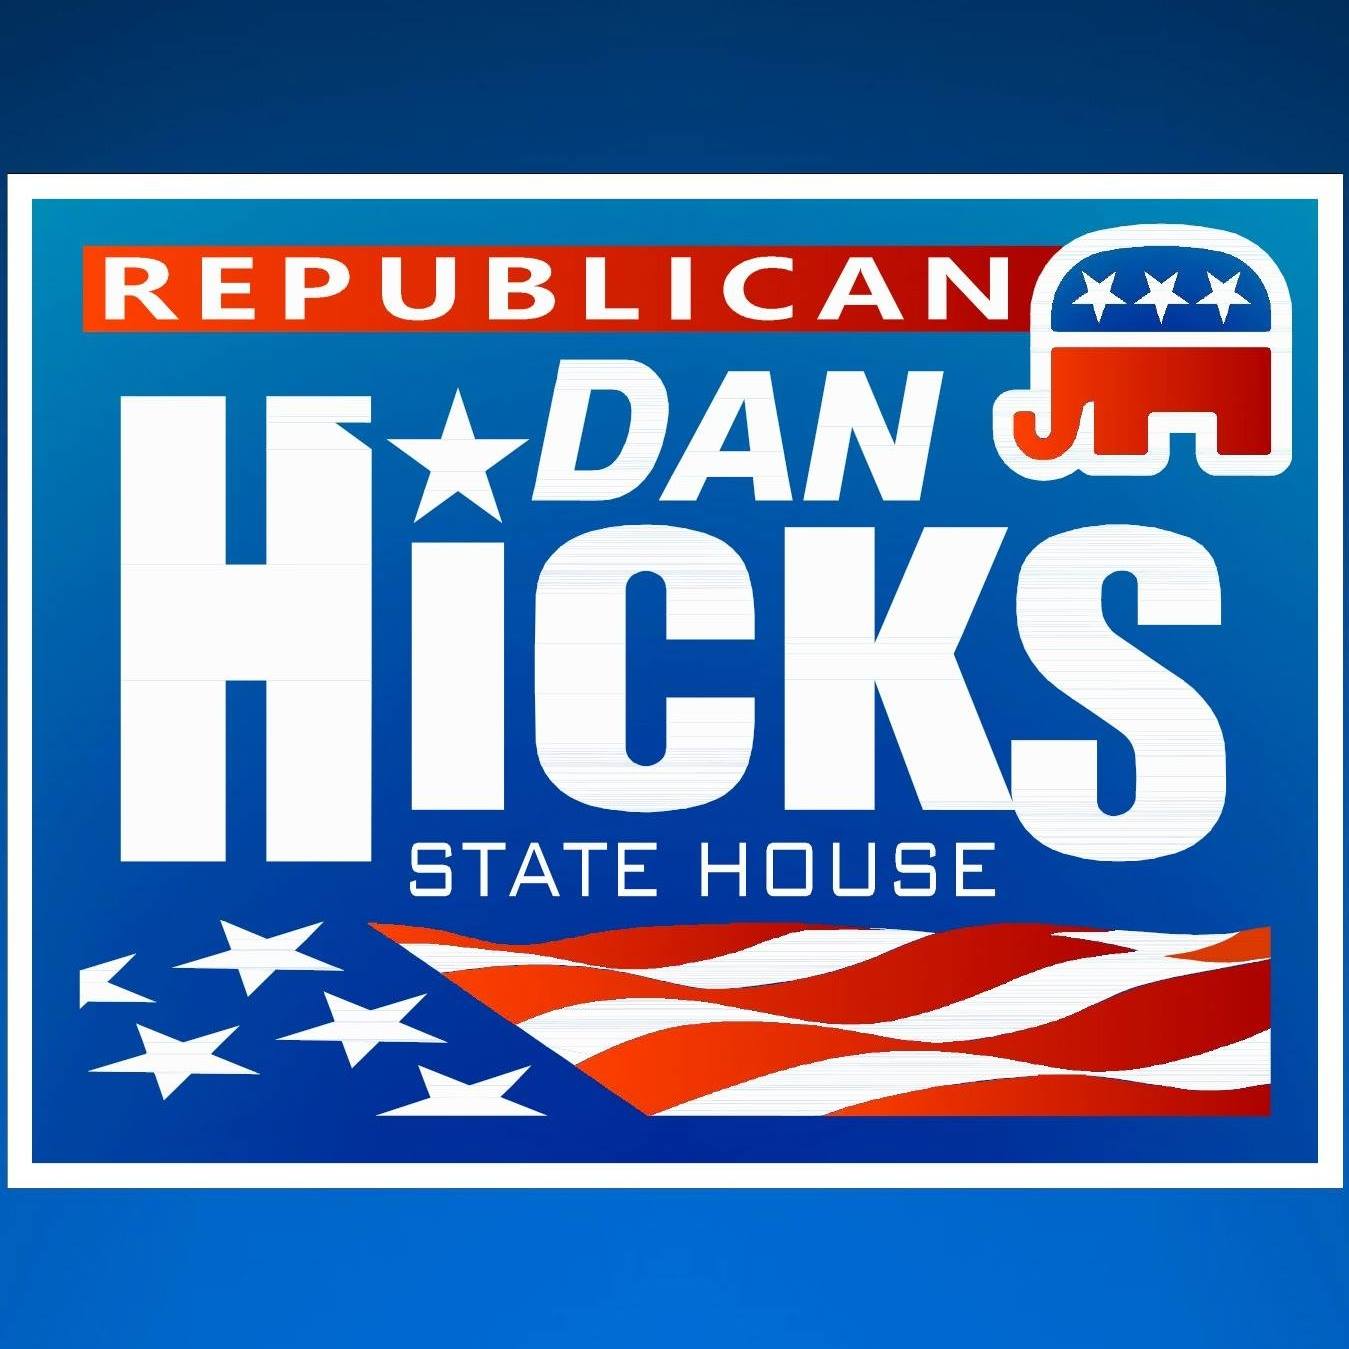 Dan_Hicks-House_79-2018.jpg